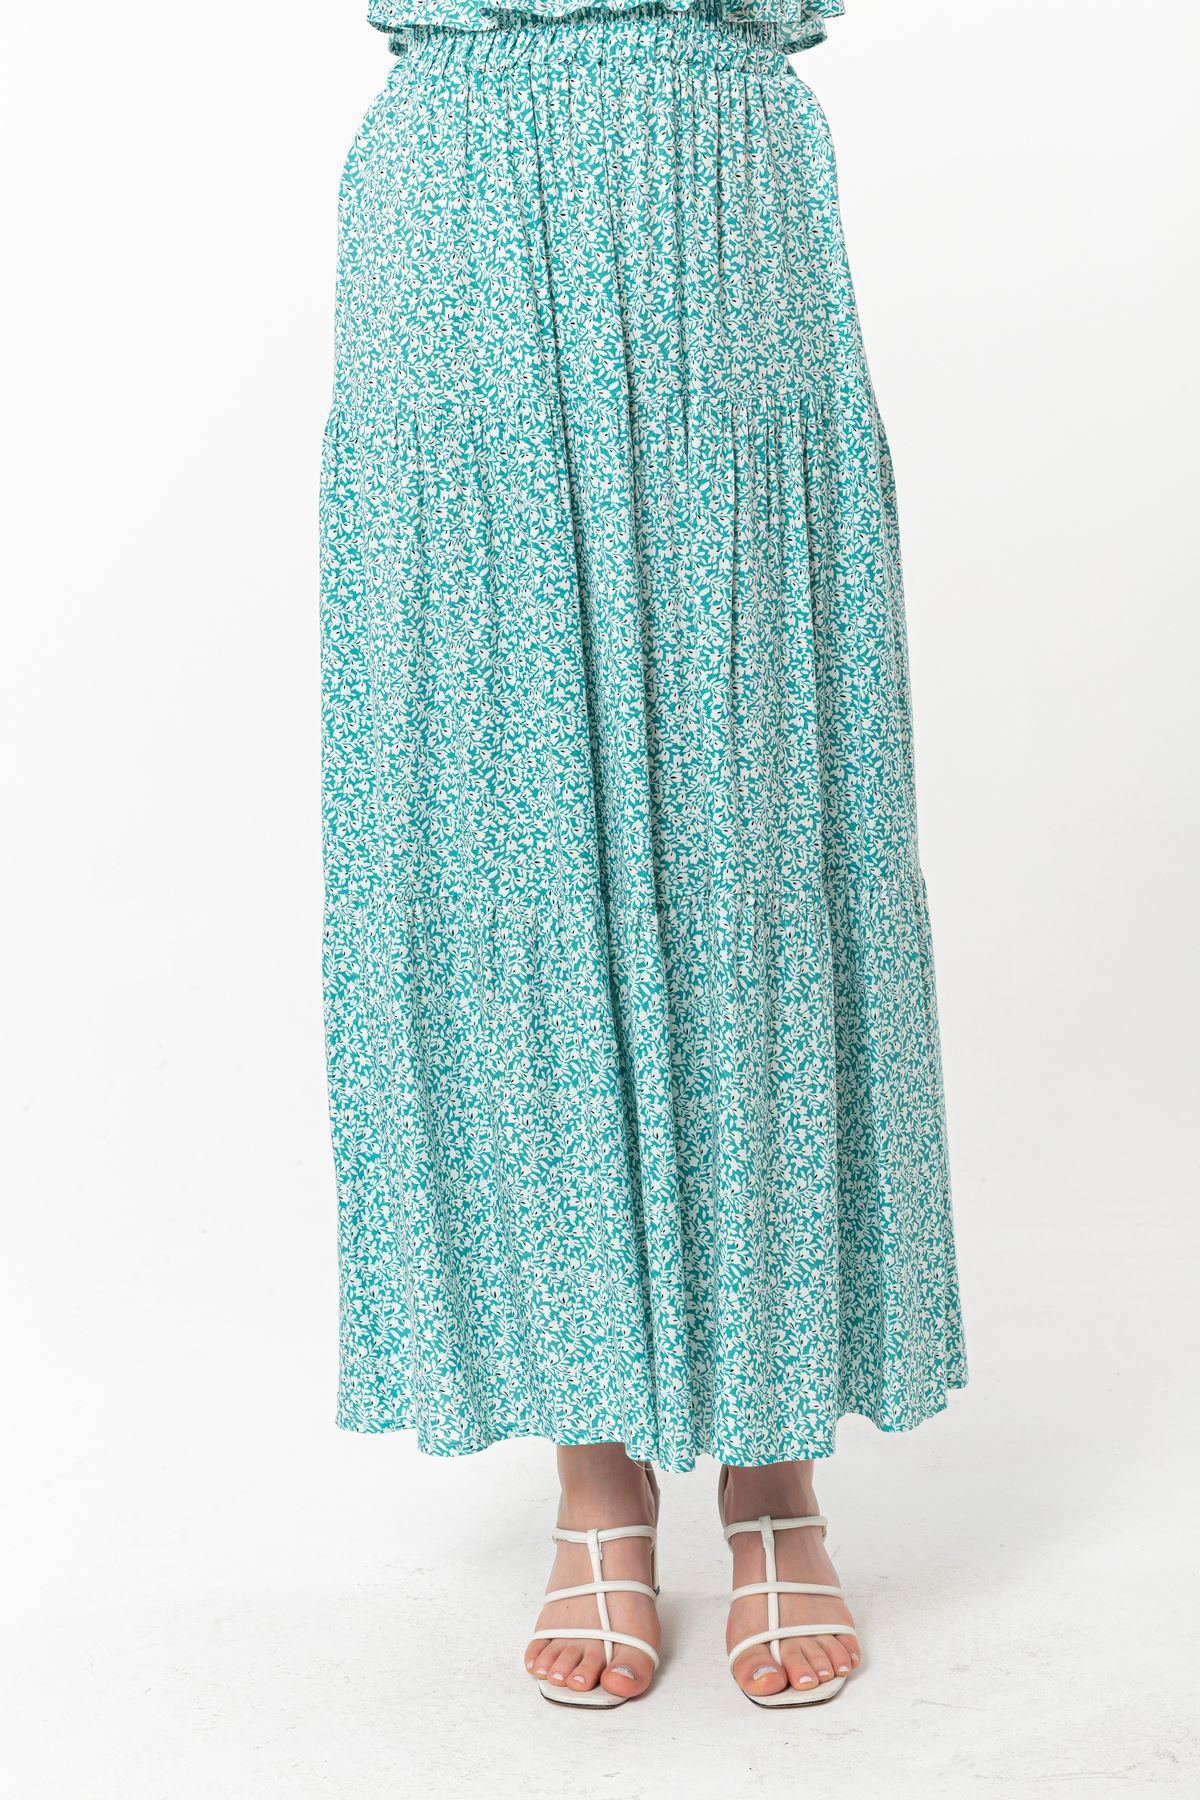 تنورة نسائية قماش فيسكون طويل قالب مريح نمط زهرة - اخضر فاتح